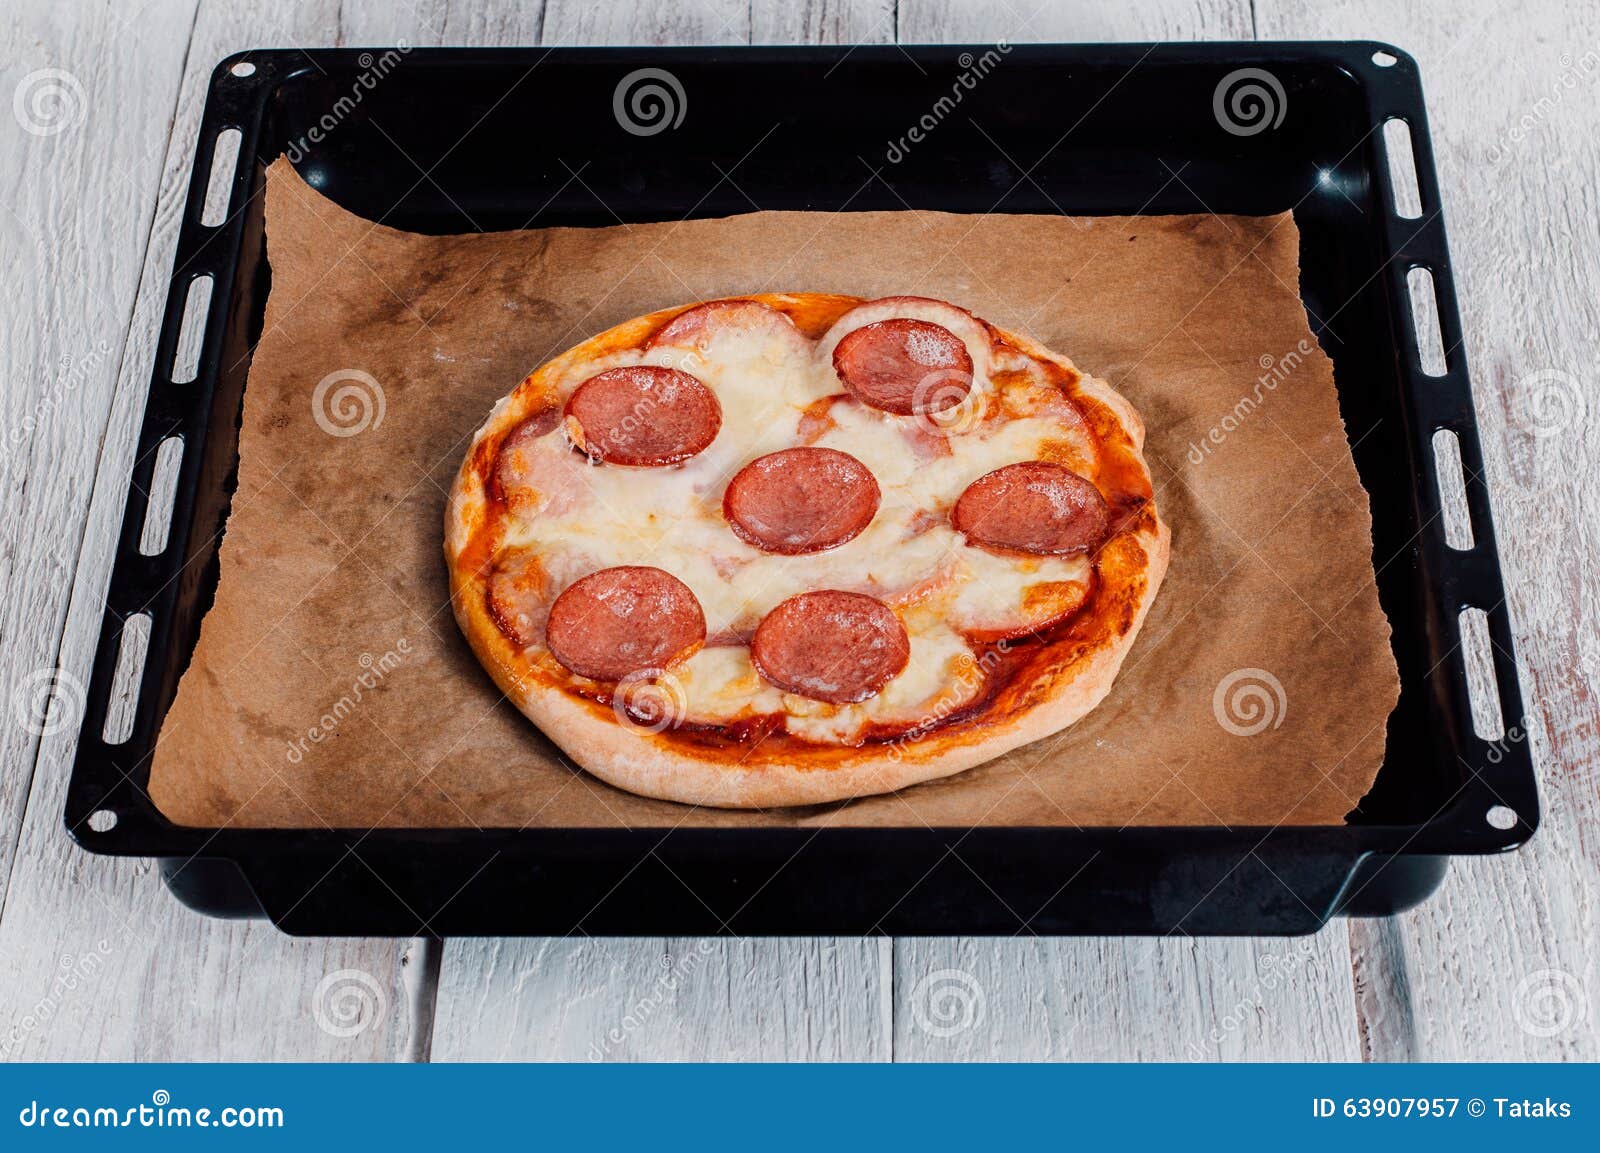 нужна ли пергаментная бумага для выпечки пиццы в духовке фото 65